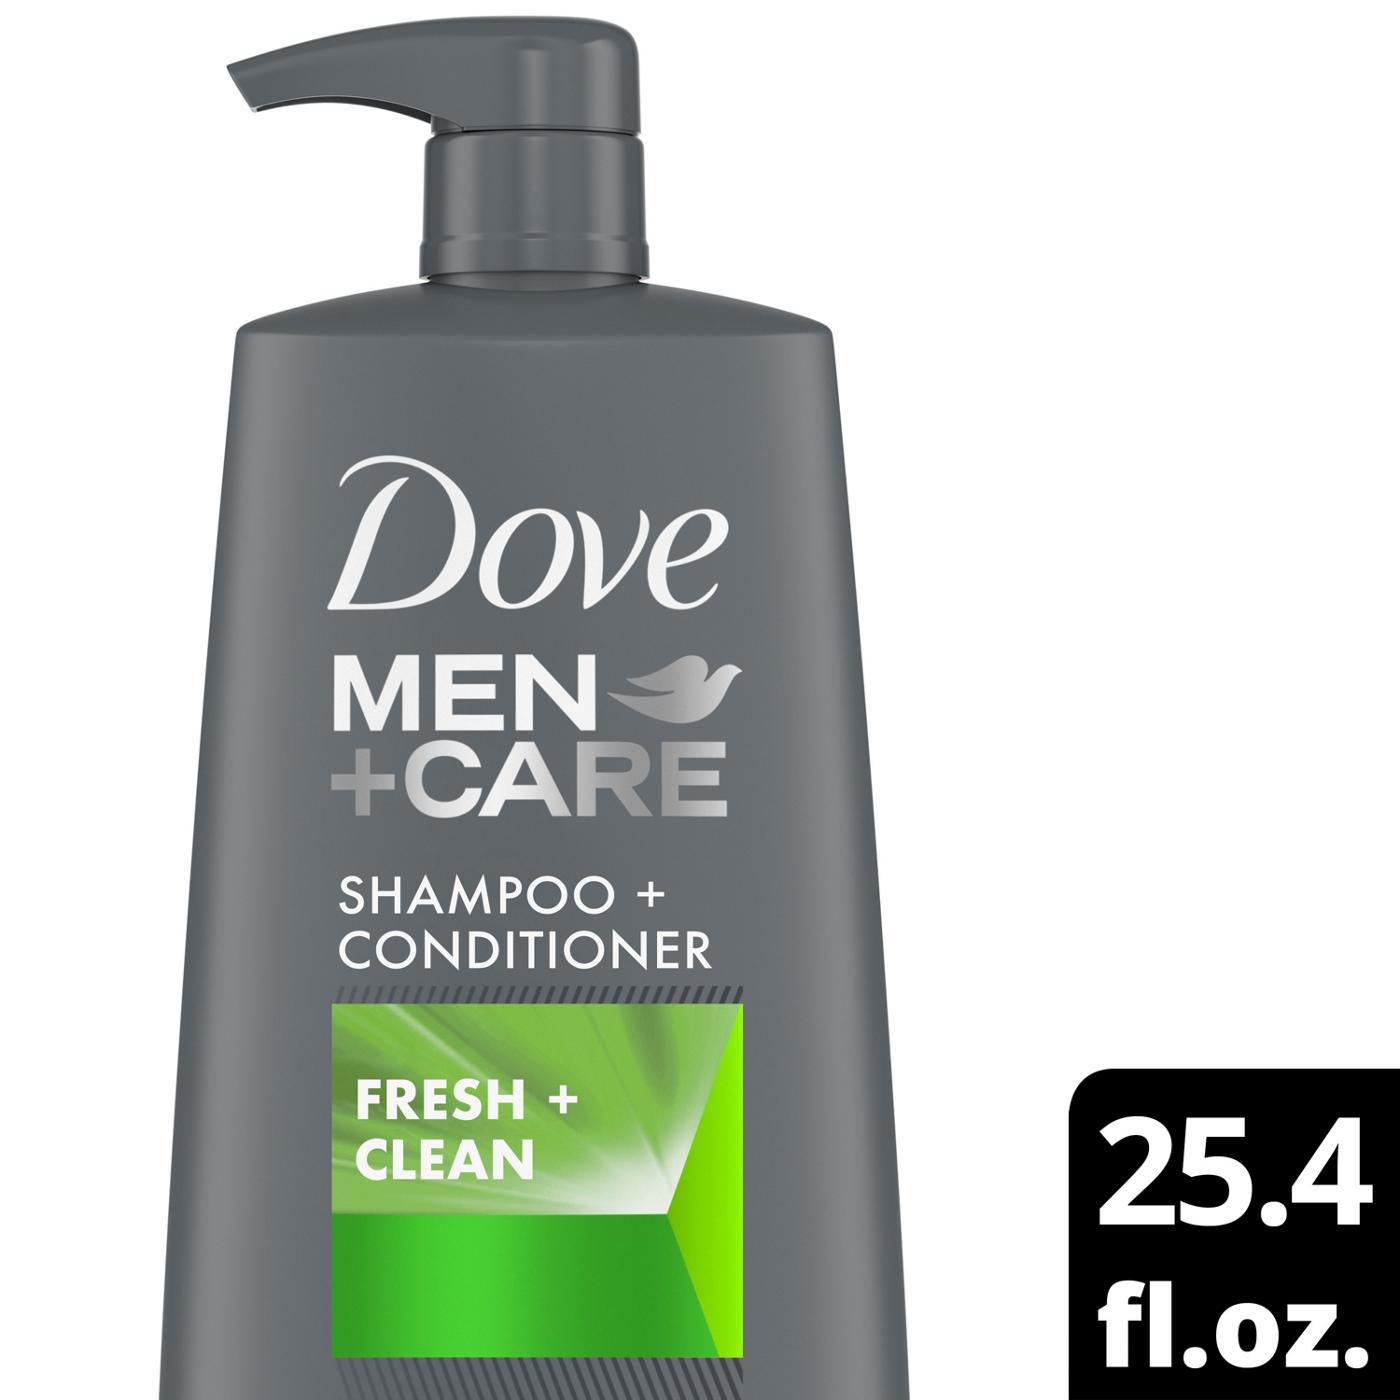 Dove Men+Care Shampoo + Conditioner - Fresh + Clean; image 3 of 8